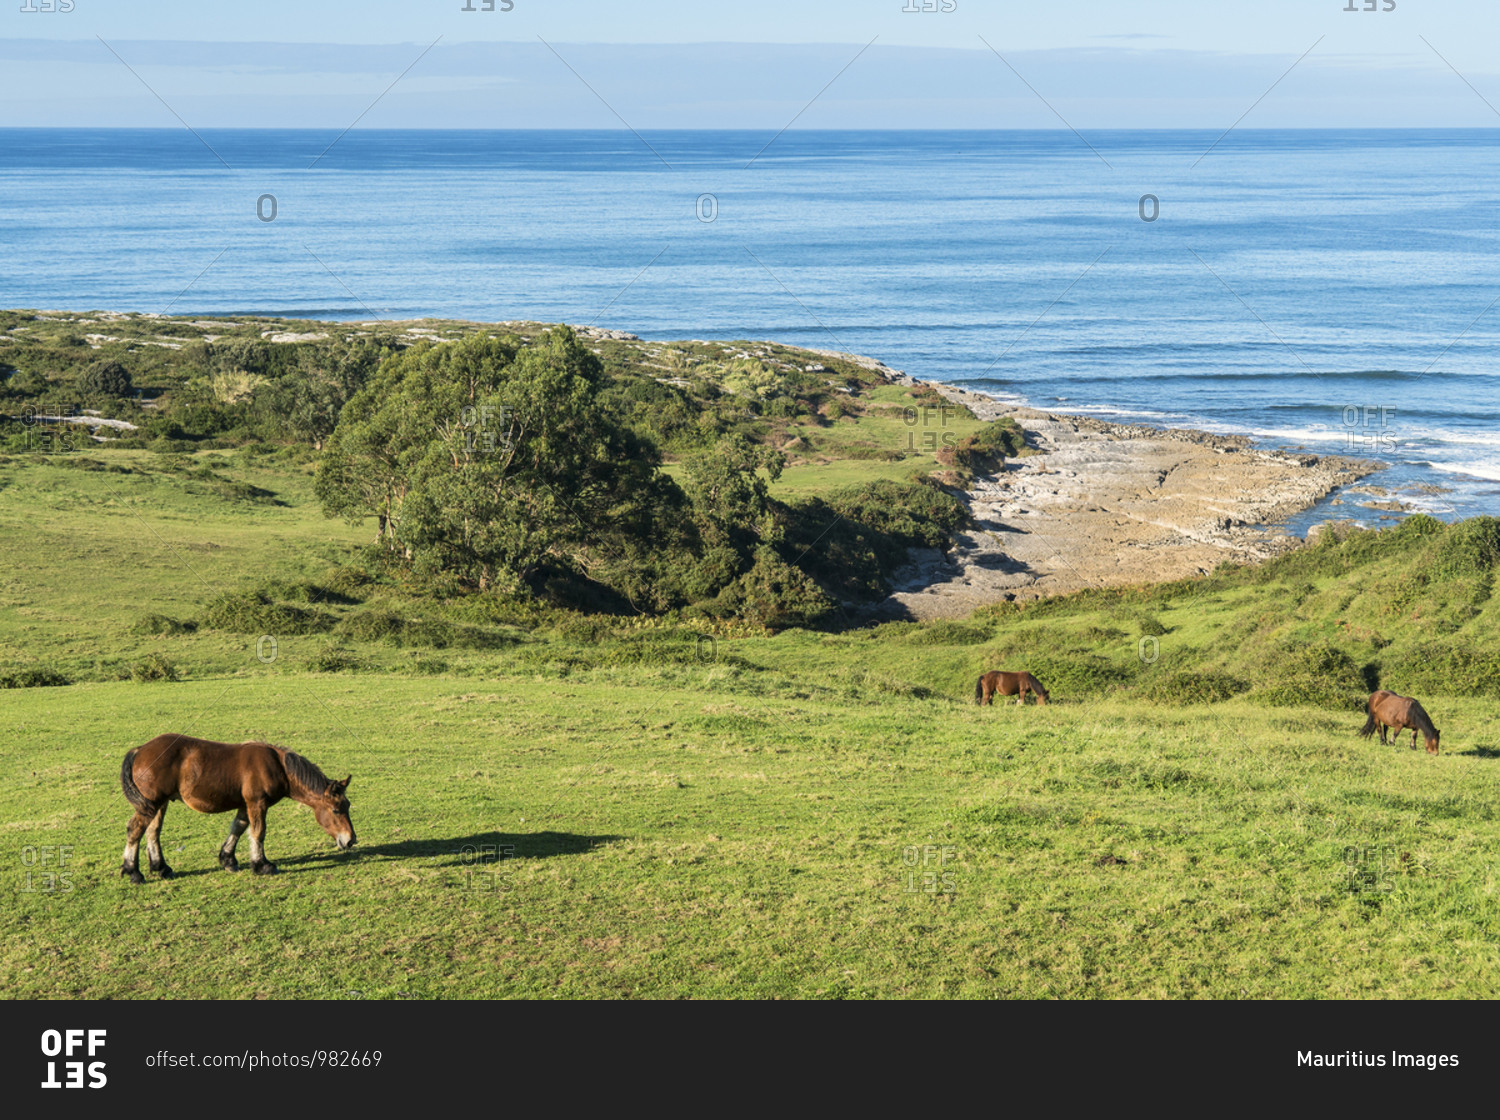 Spain, north coast, Cantabria, San Vicente de la Barquera, coast, Playa de Linera, grazing horses